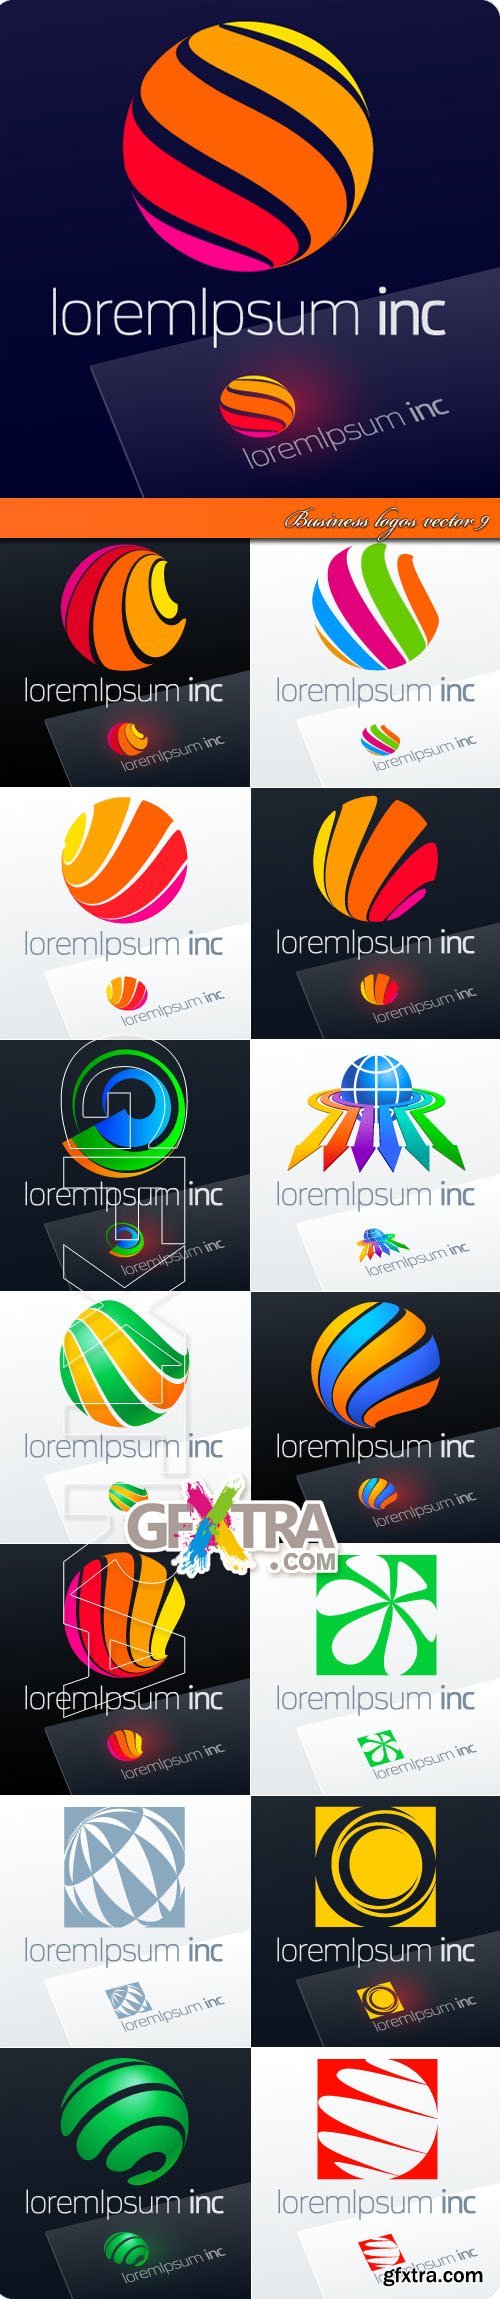 Business logos vector 9